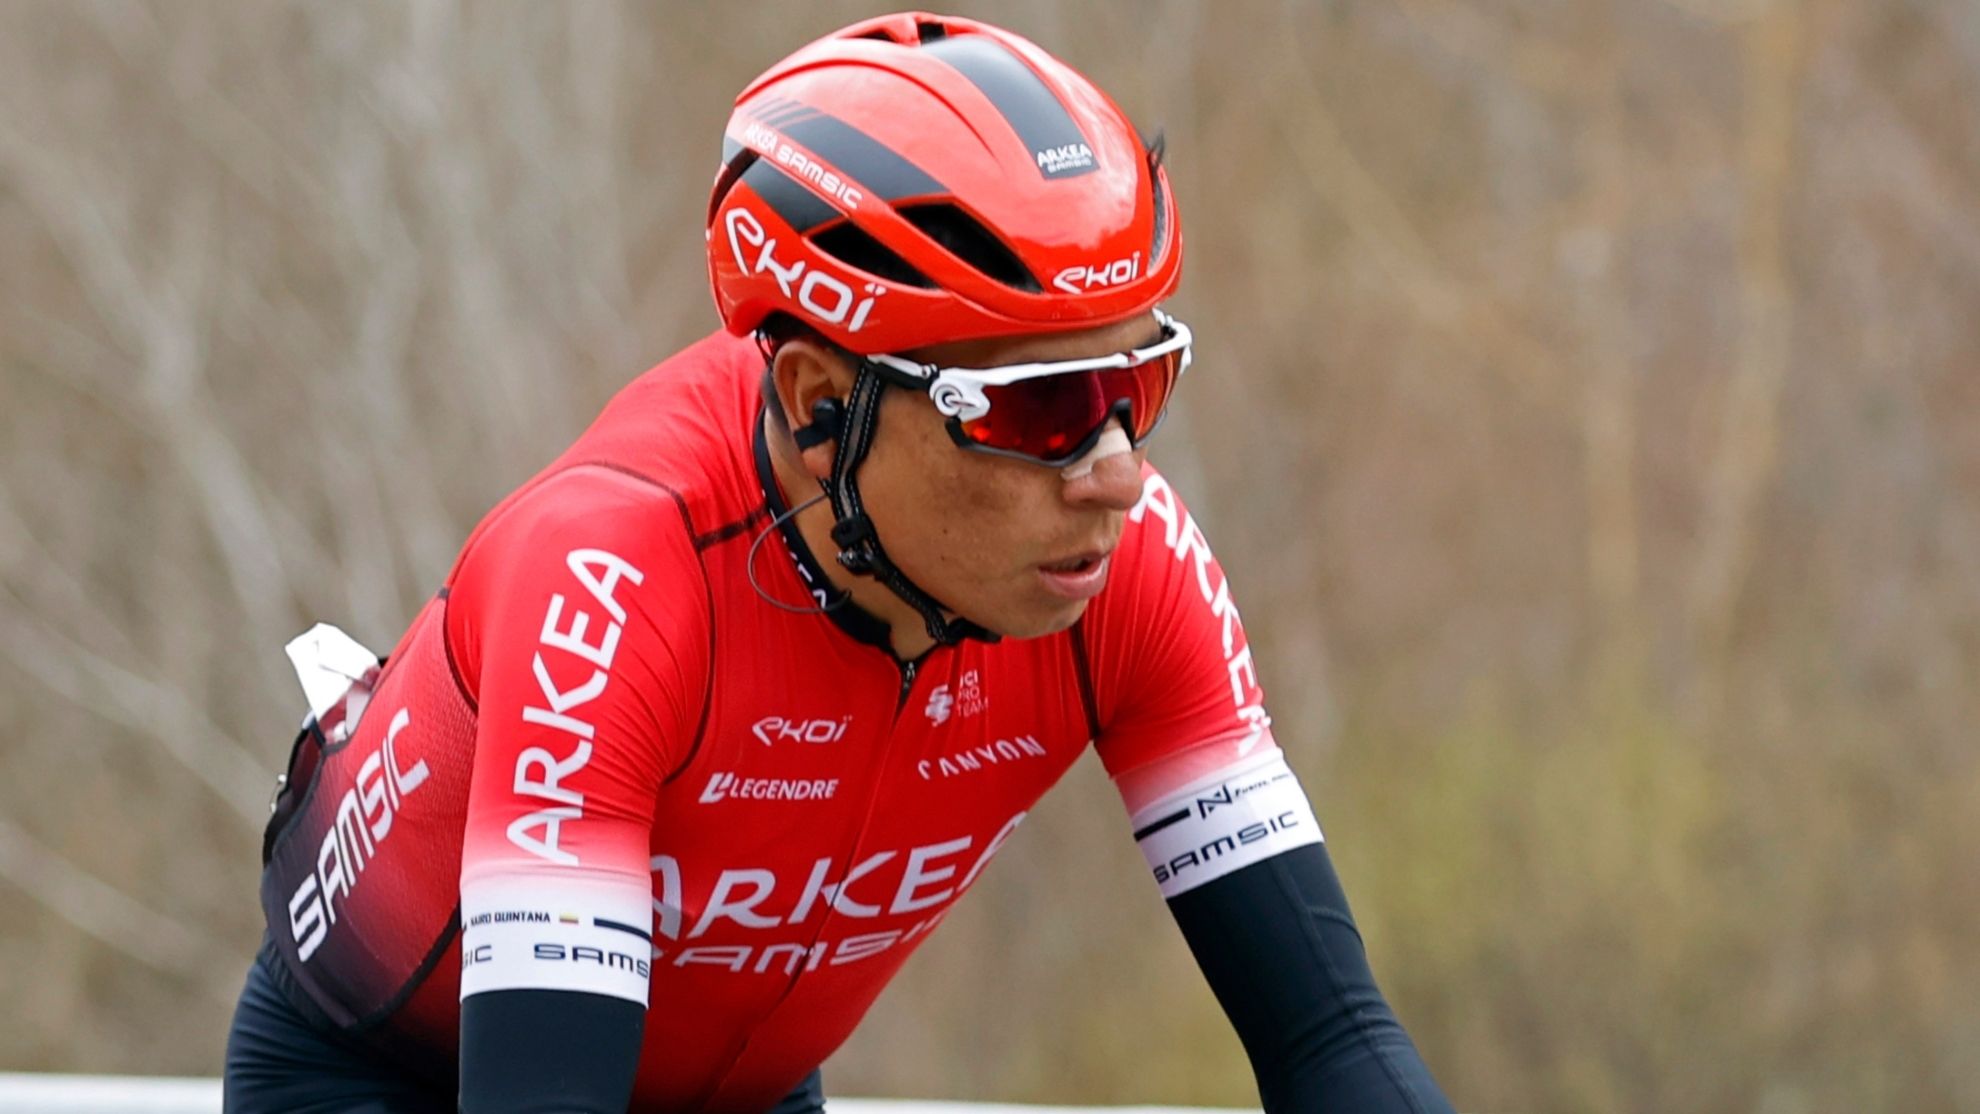 Nairo Quintana descalificado del Tour de Francia por uso de opioide